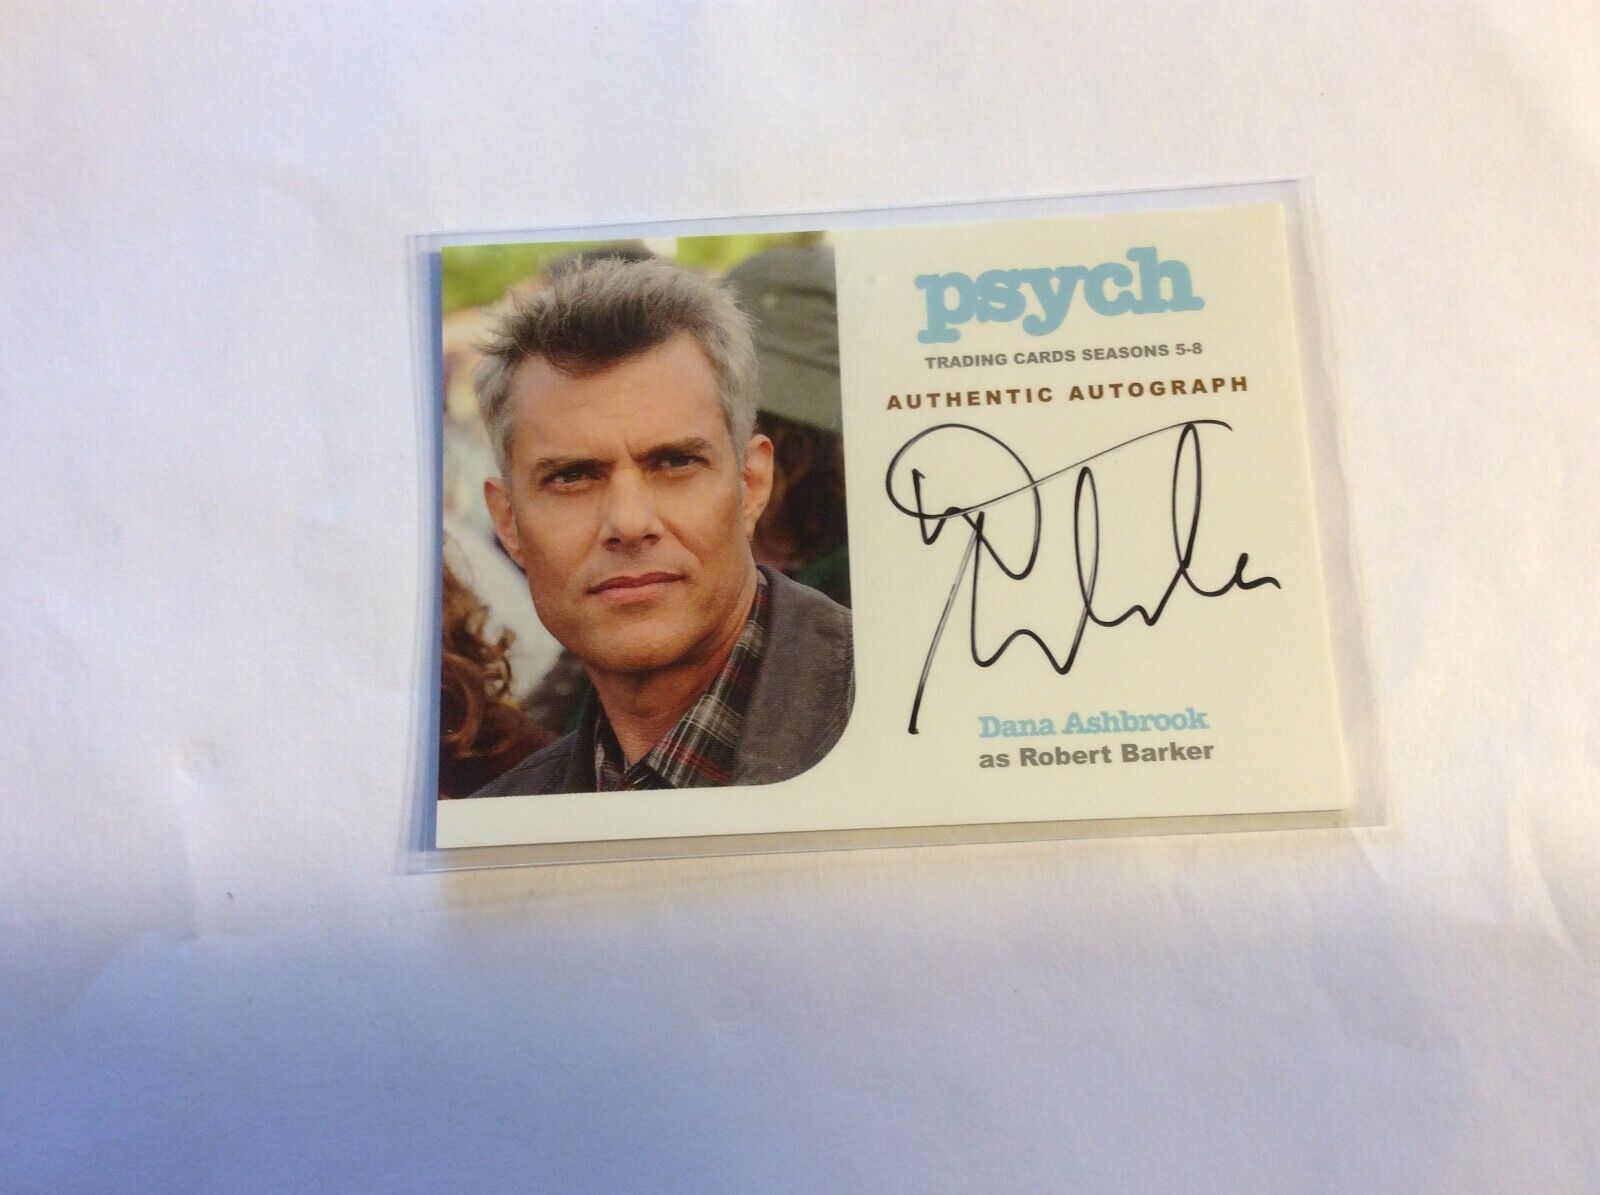 Psych seasons 5-8 autograph insert card DA of Dana Ashbrook as Robert Barker